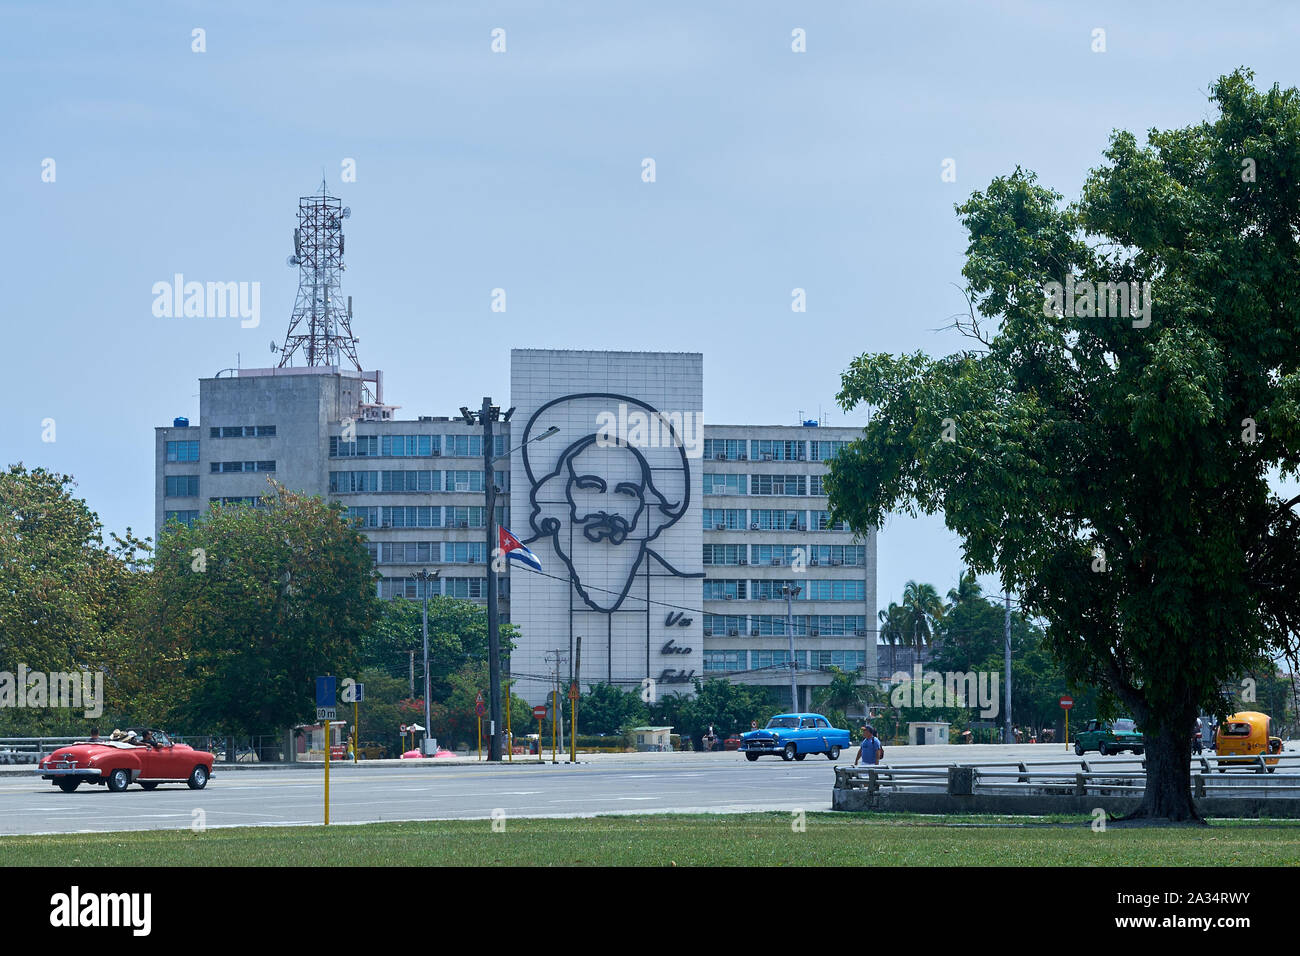 Gebäude sind mit Denkmälern zu Che Guevara und Fidel Castro in Place de la Revolucion, Havanna, Kuba geschmückt Stockfoto